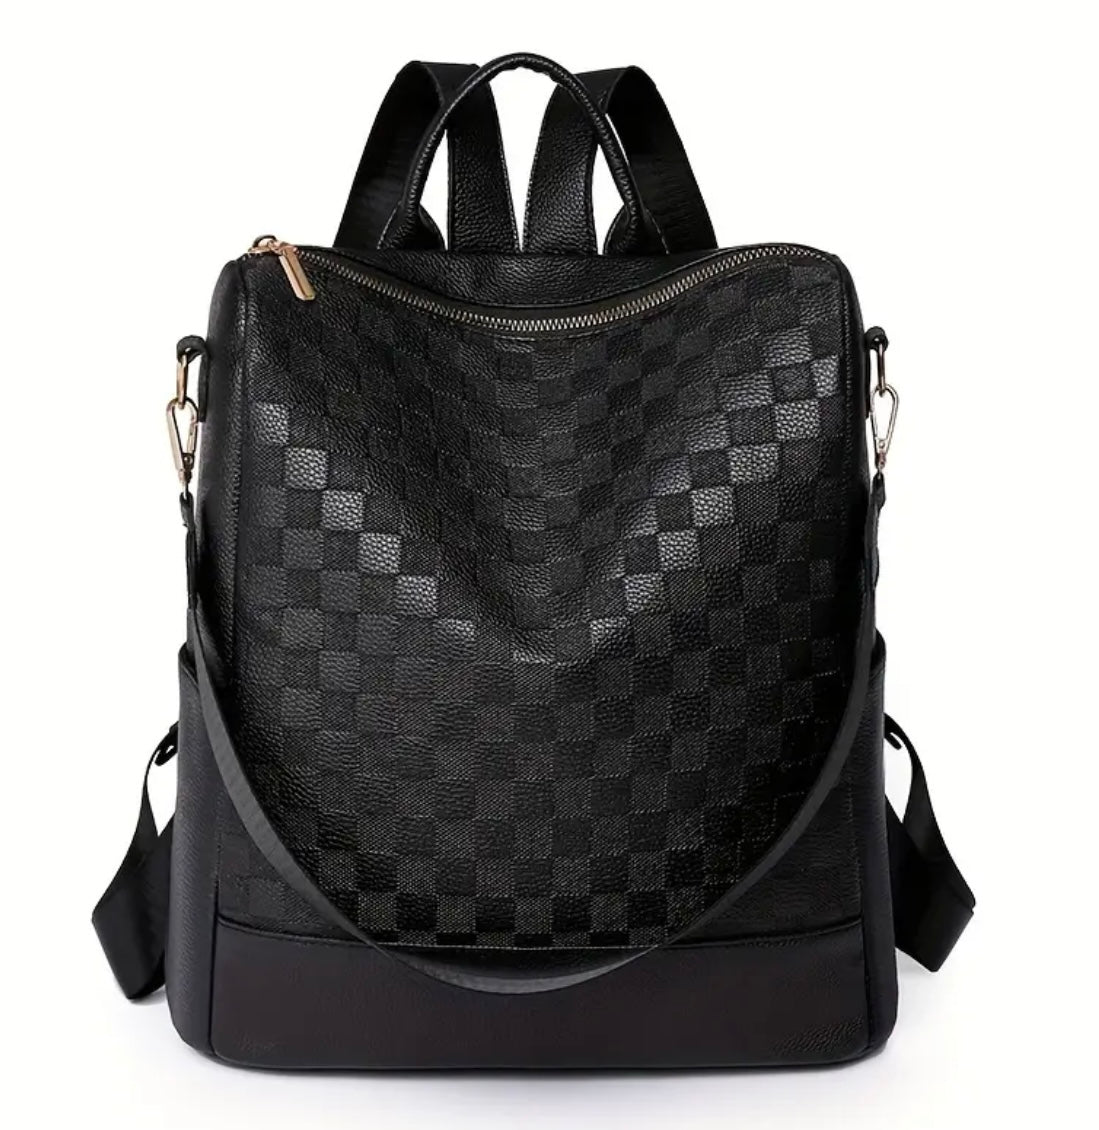 Checker Backpack Bag